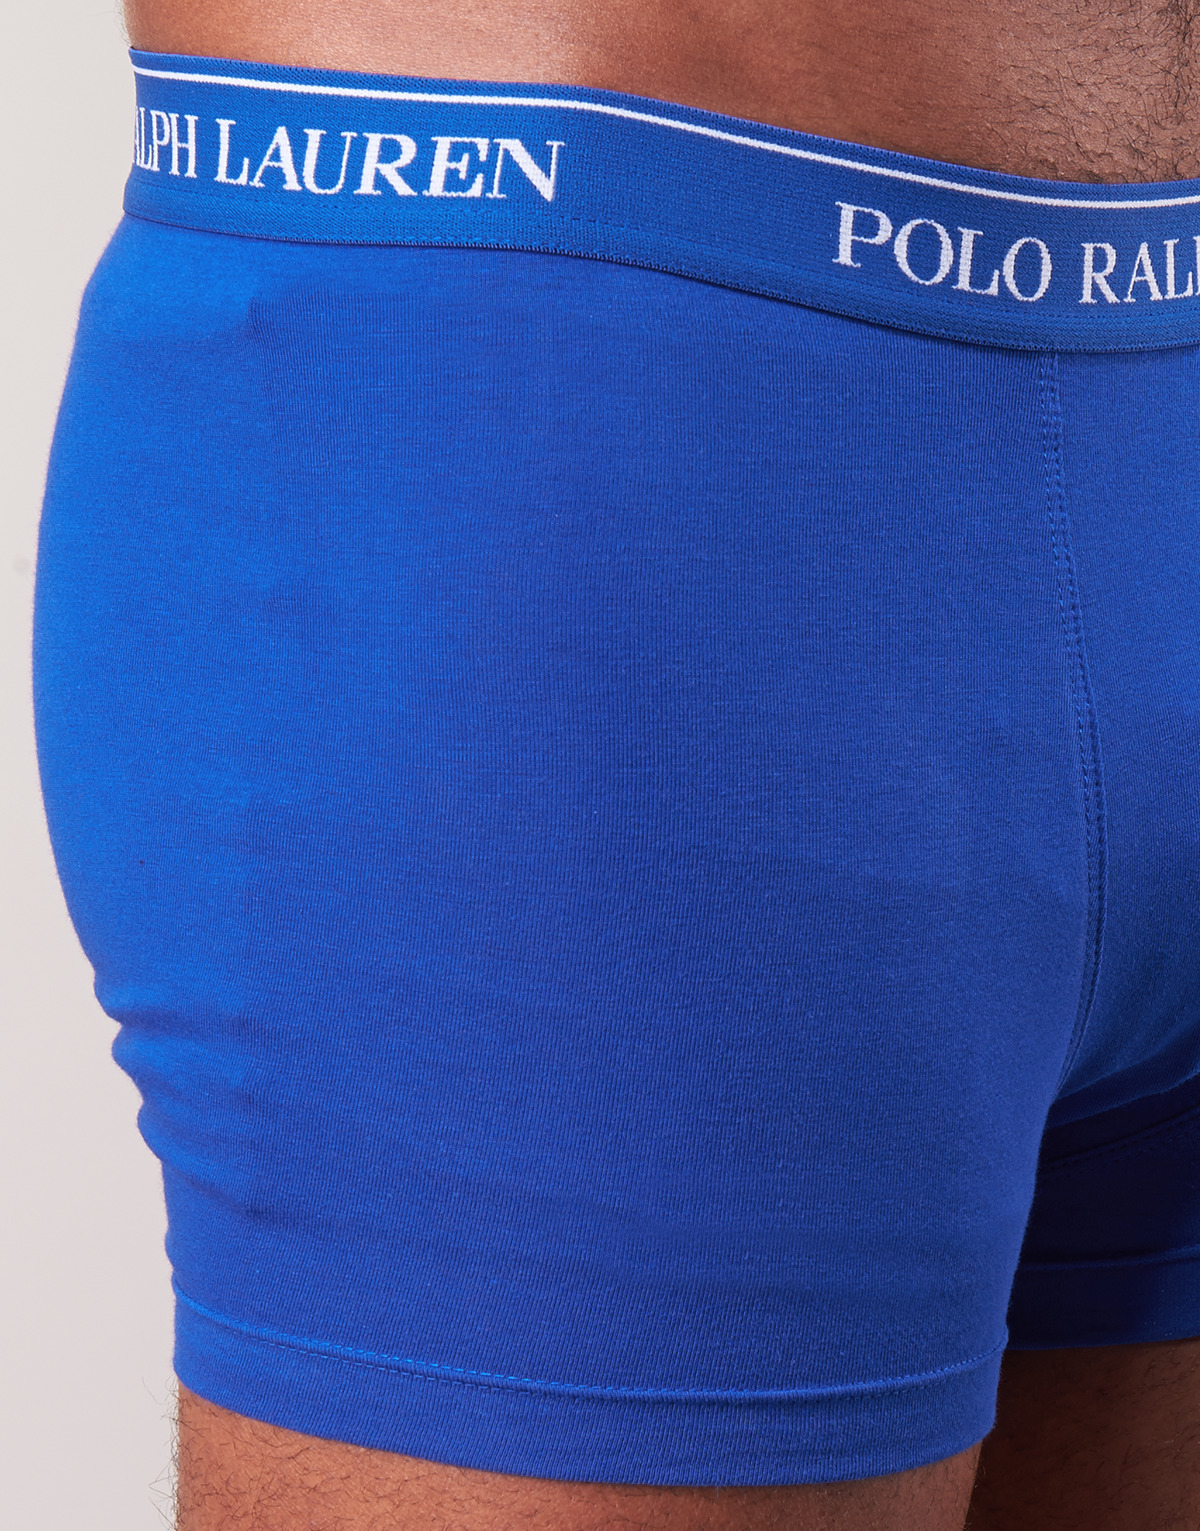 Polo Ralph Lauren Bleu CLASSIC 3 PACK TRUNK qHeCM3vZ